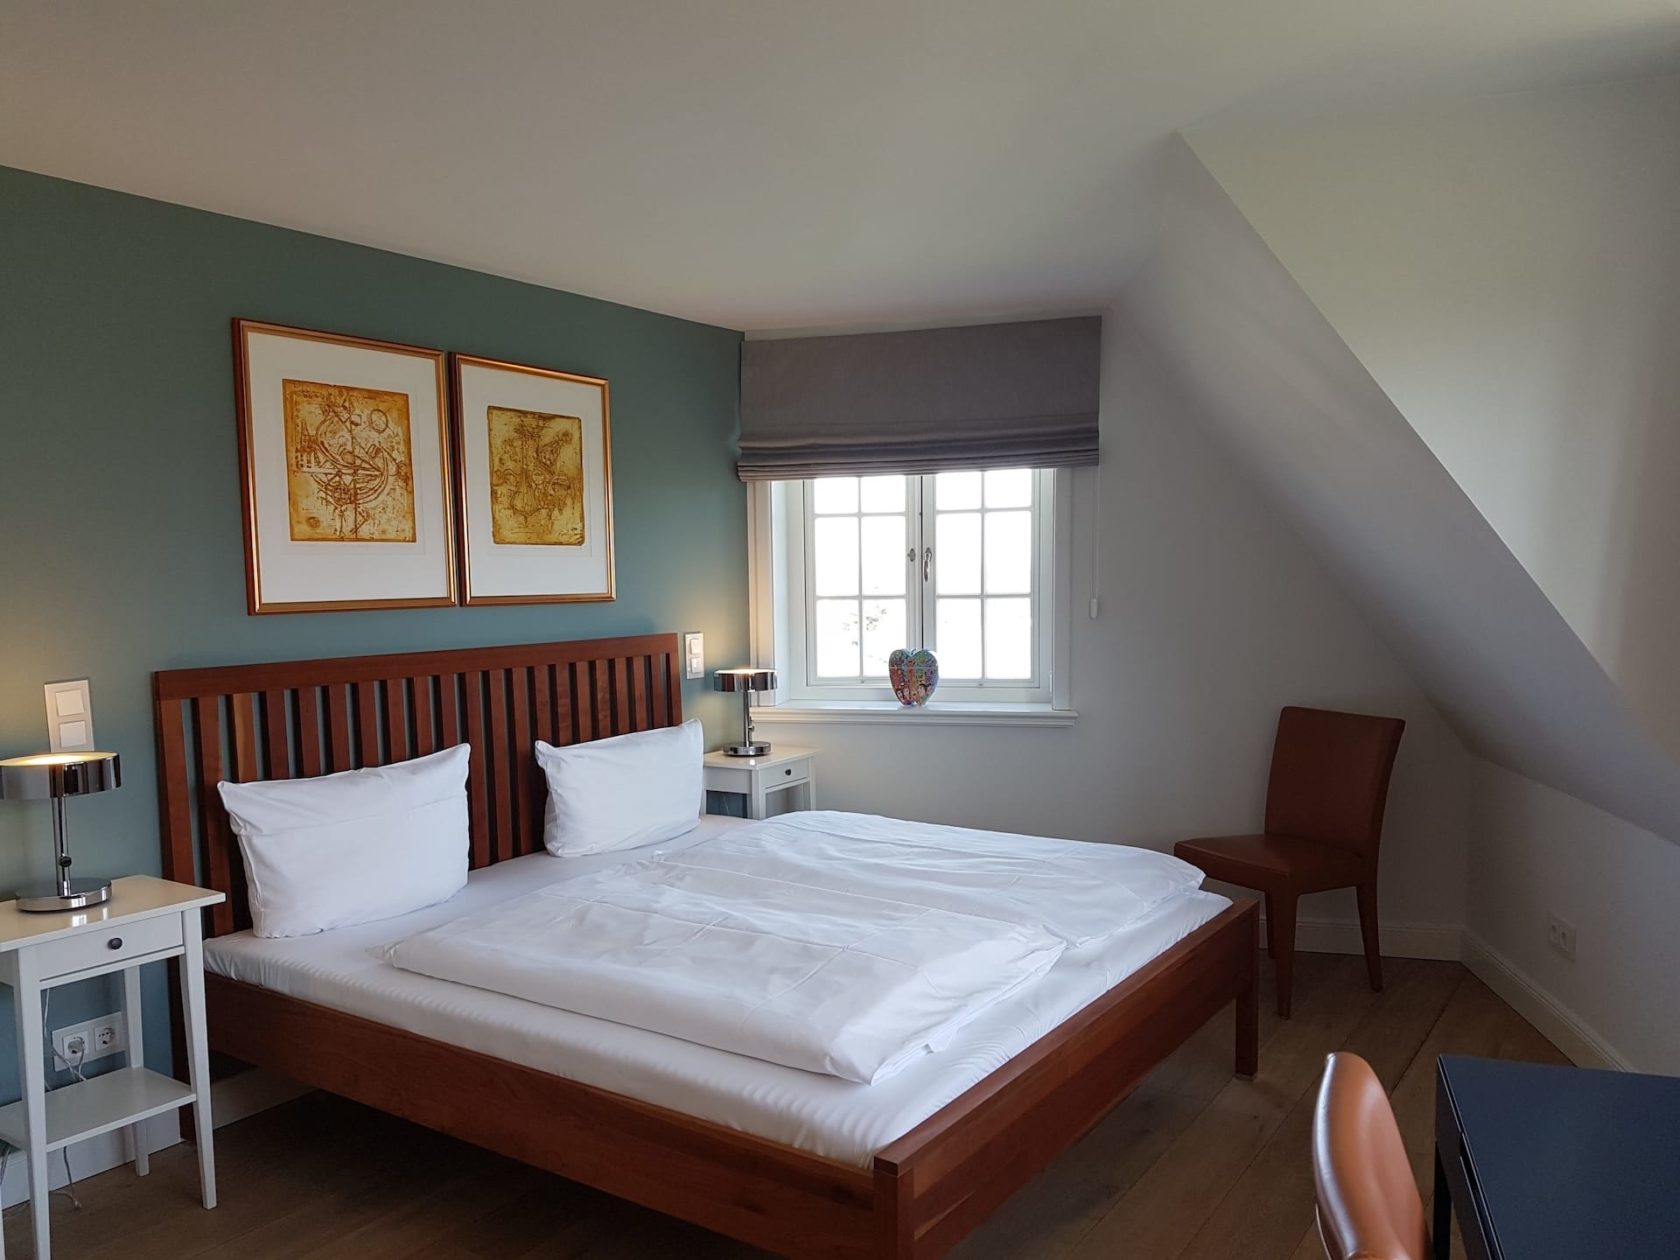 Schlafzimmer mit großem Doppelbett im Ferienhaus "Haus zwischen den Meeren" in Rantum auf Sylt